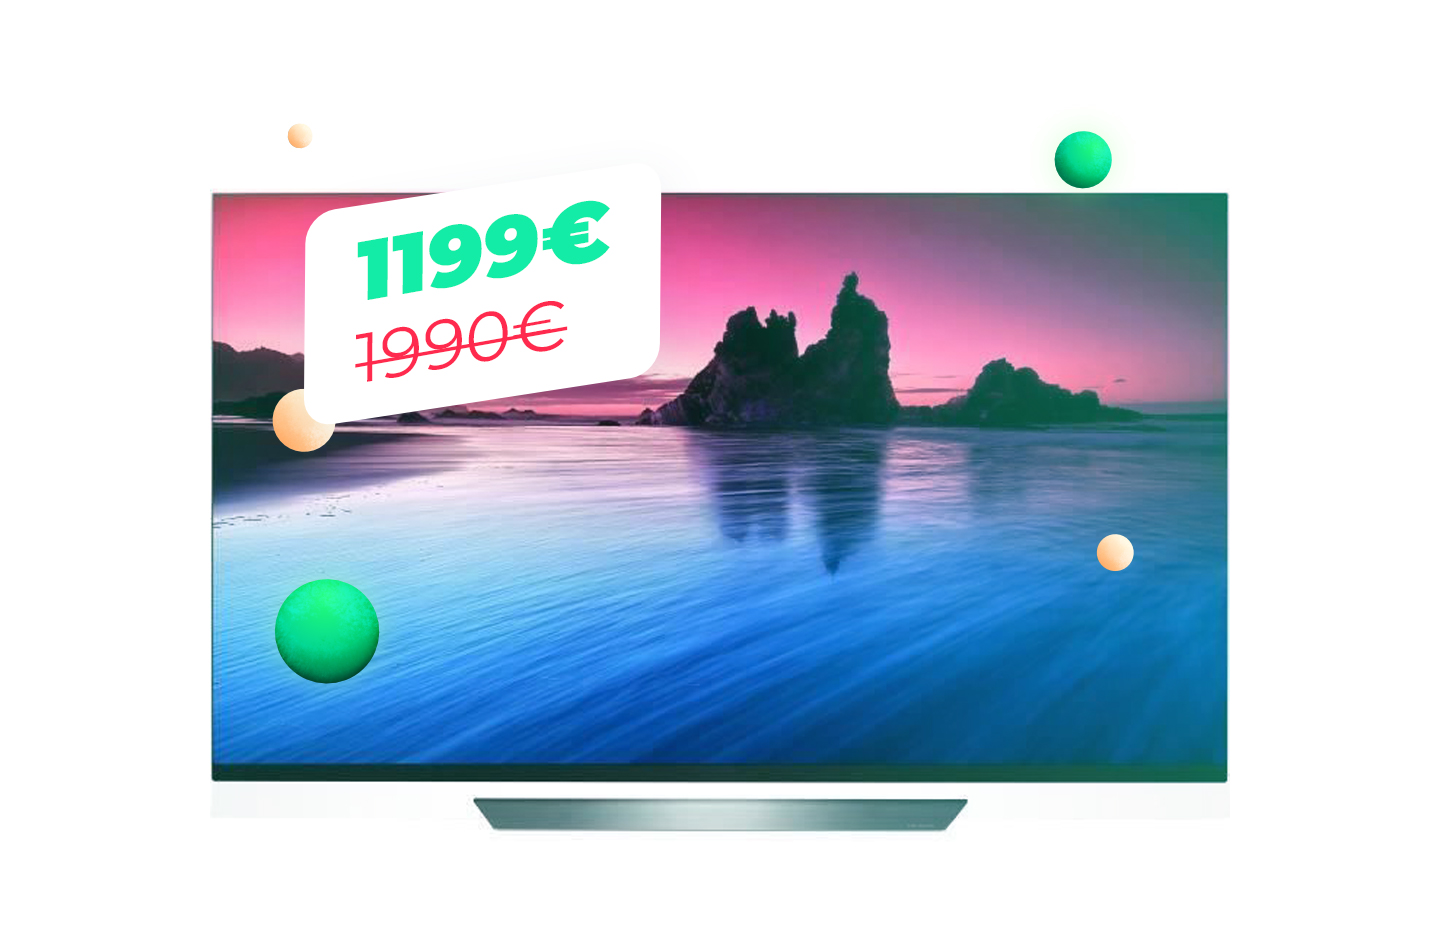 Le TV OLED LG 55E8 qui passe à 1199 euros pour le Cyber Monday